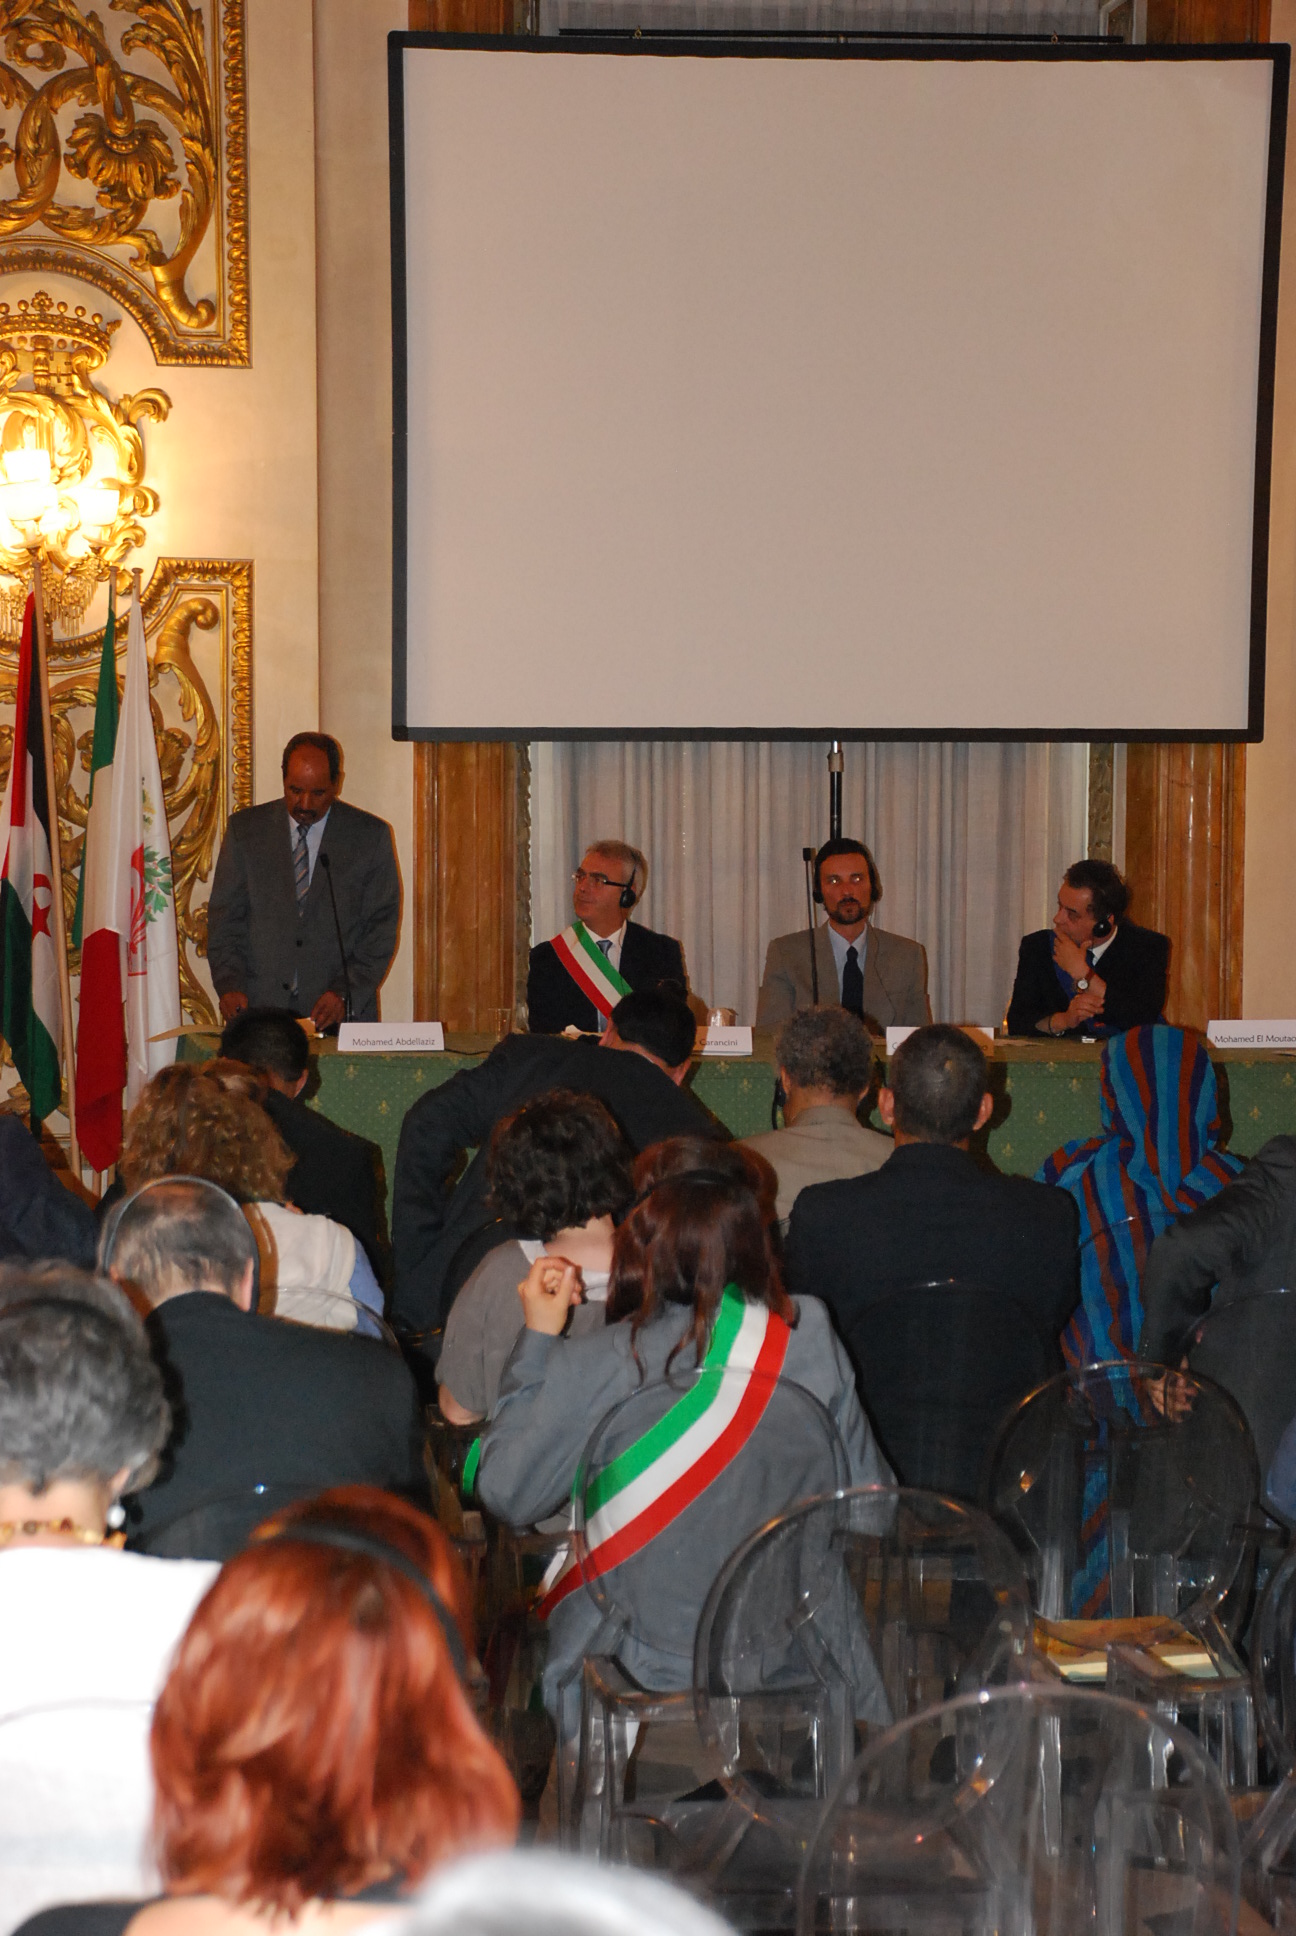 Il sindaco di Macerata, alla conferenza per i diritti umani dei Saharawi, riconoscere subito la Rasd